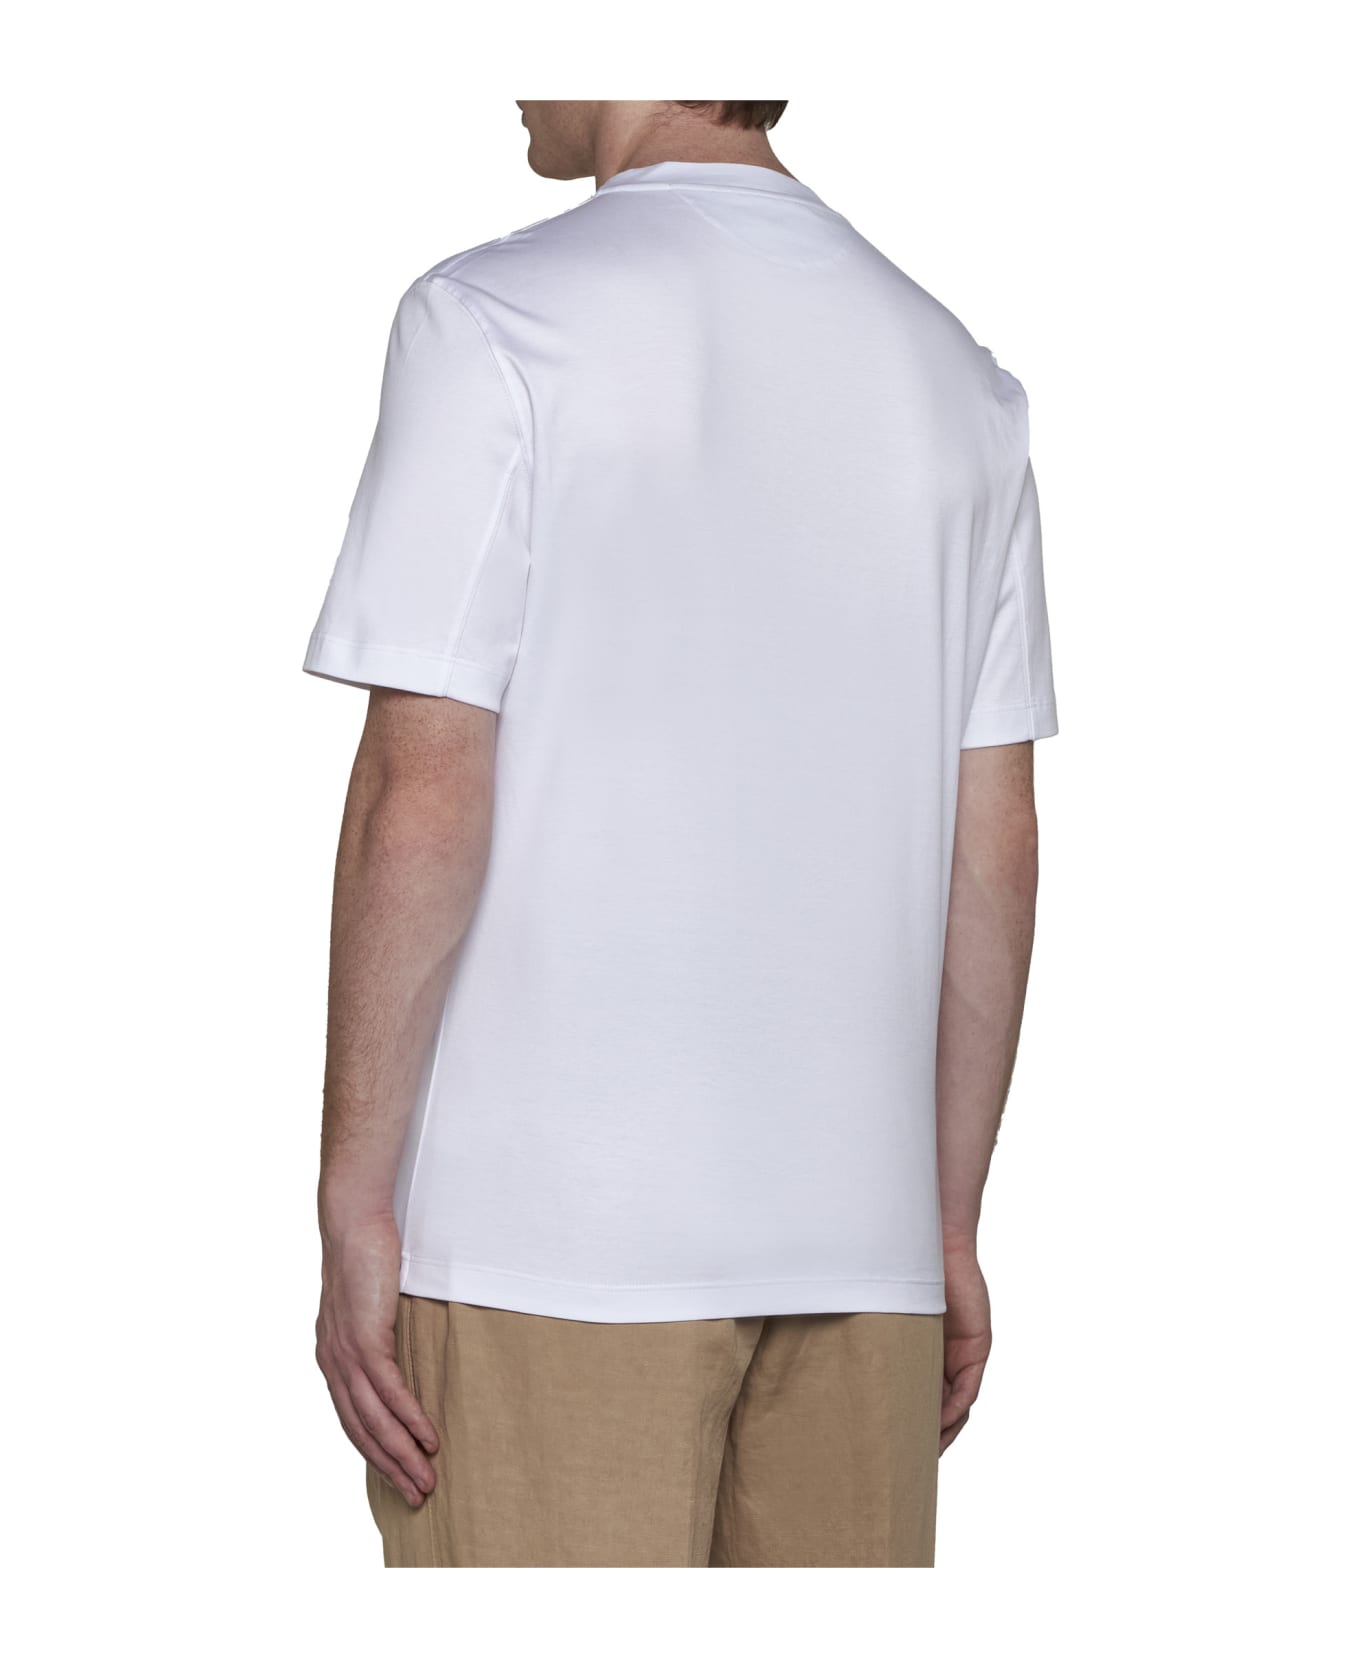 Brunello Cucinelli T-Shirt - Bianco ottipo tp